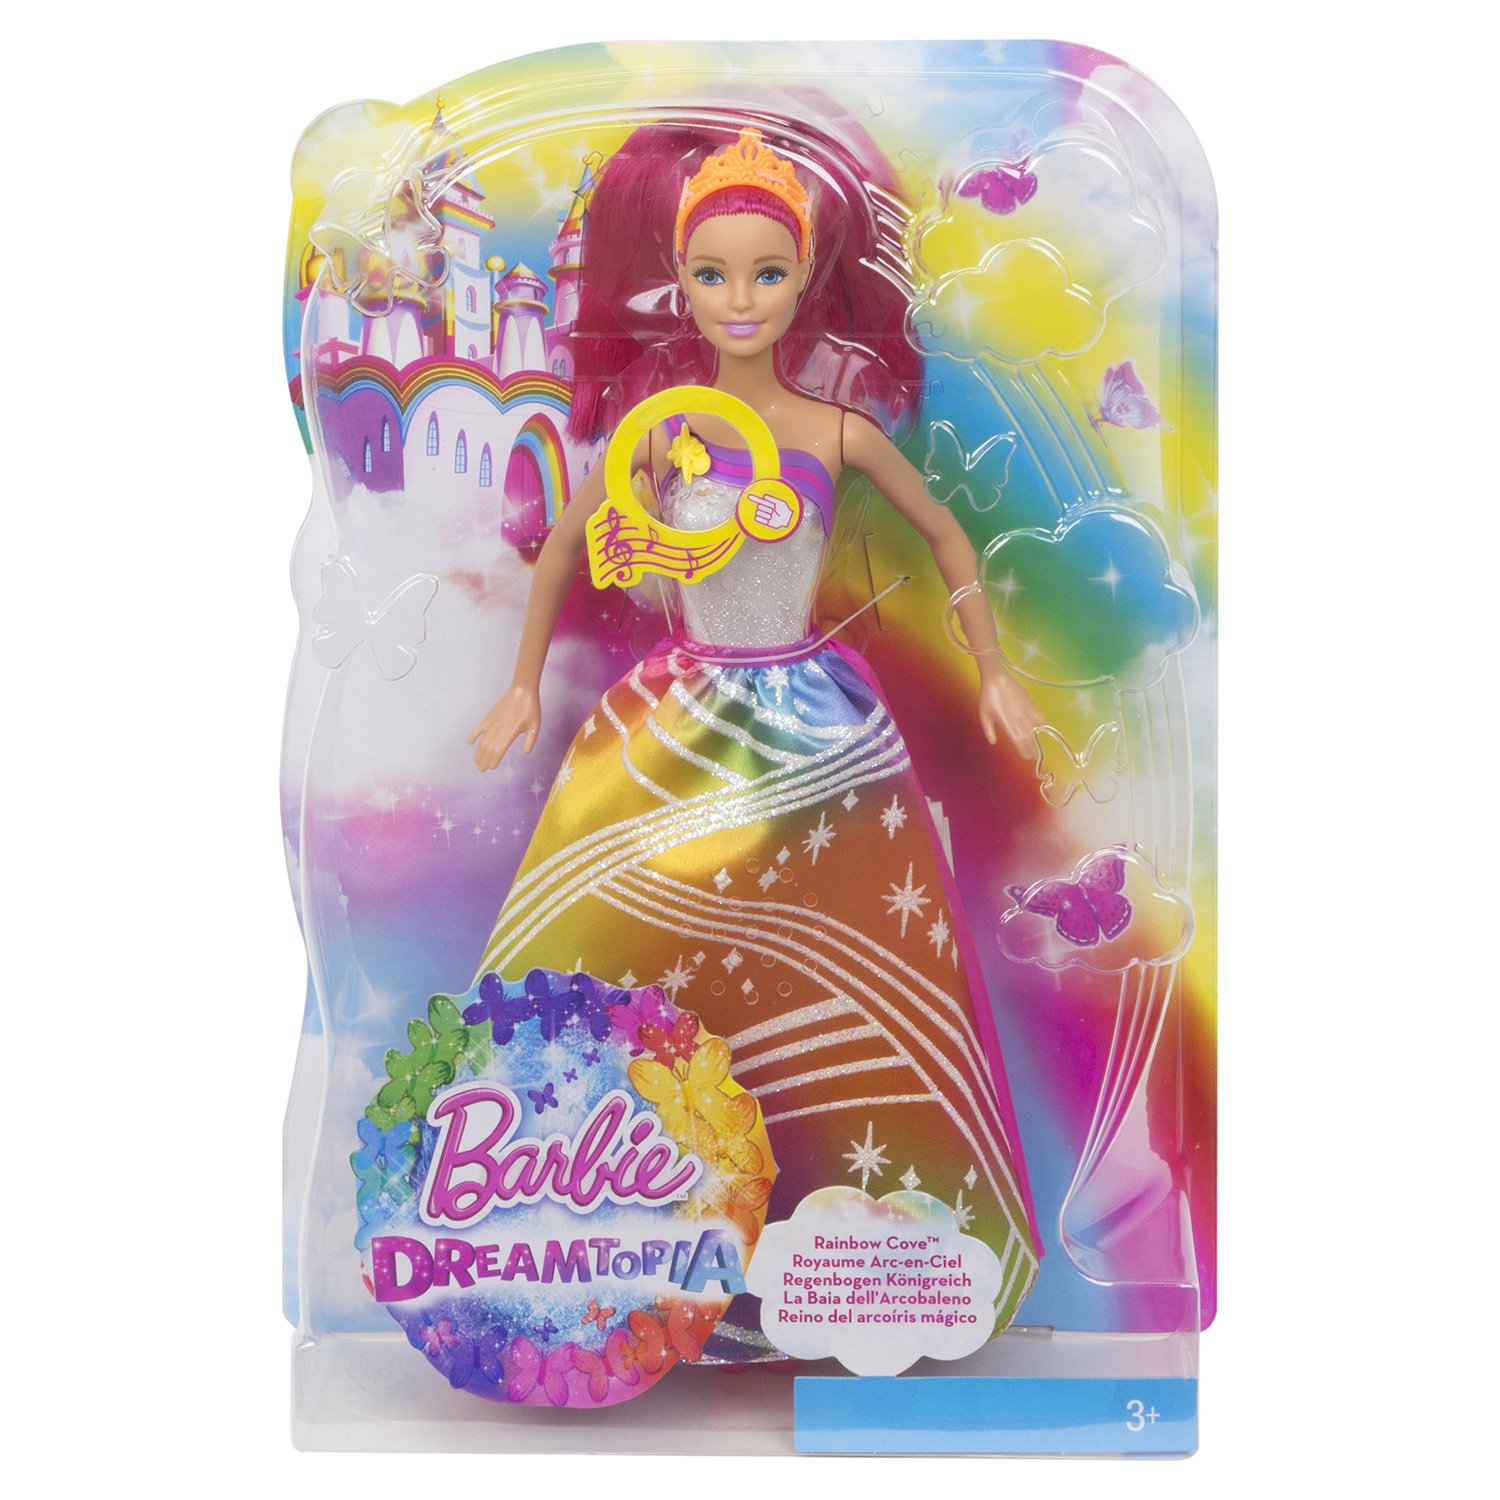 Интерактивная кукла Barbie Радужная принцесса с волшебными волосами, DPP90